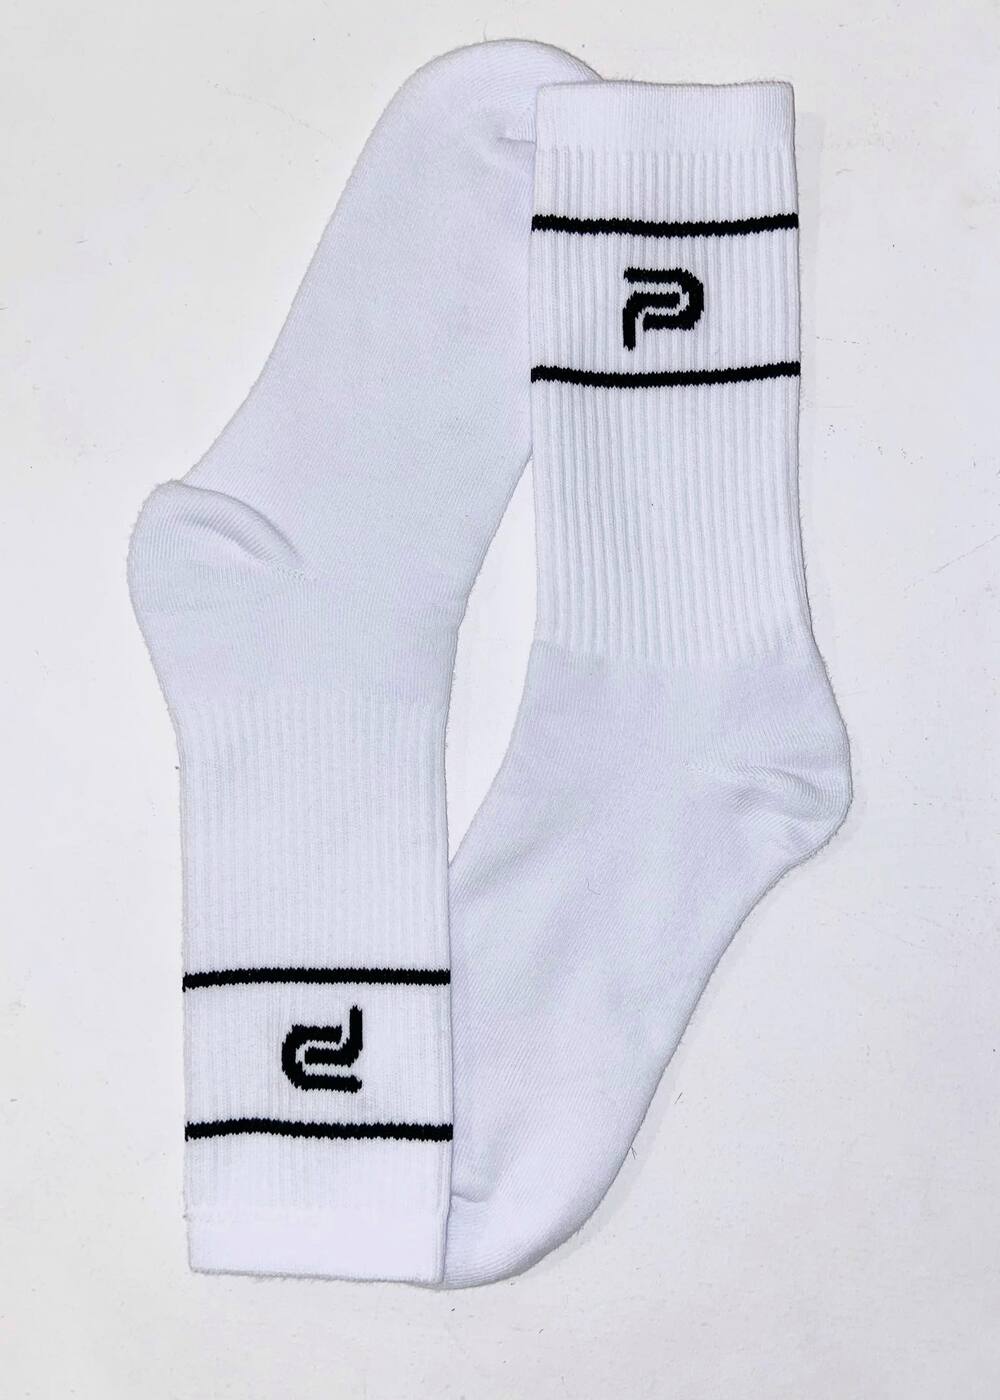 Ψηλές αθλητικές κάλτσες P-RULES black 22